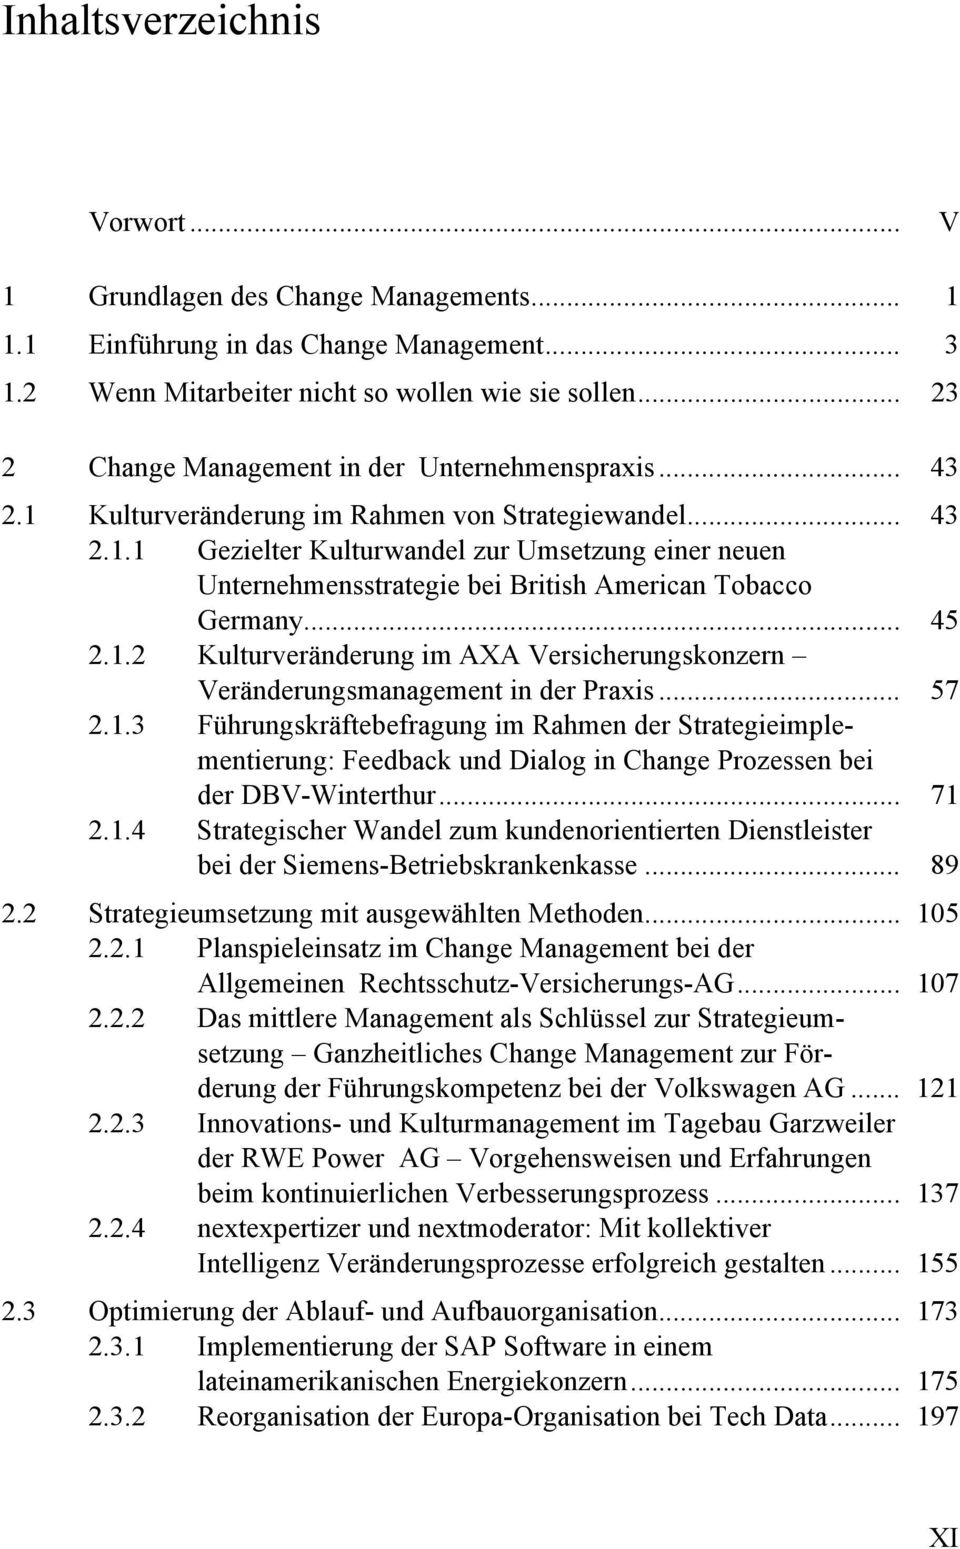 .. 45 2.1.2 Kulturveränderung im AXA Versicherungskonzern Veränderungsmanagement in der Praxis... 57 2.1.3 Führungskräftebefragung im Rahmen der Strategieimplementierung: Feedback und Dialog in Change Prozessen bei der DBV-Winterthur.